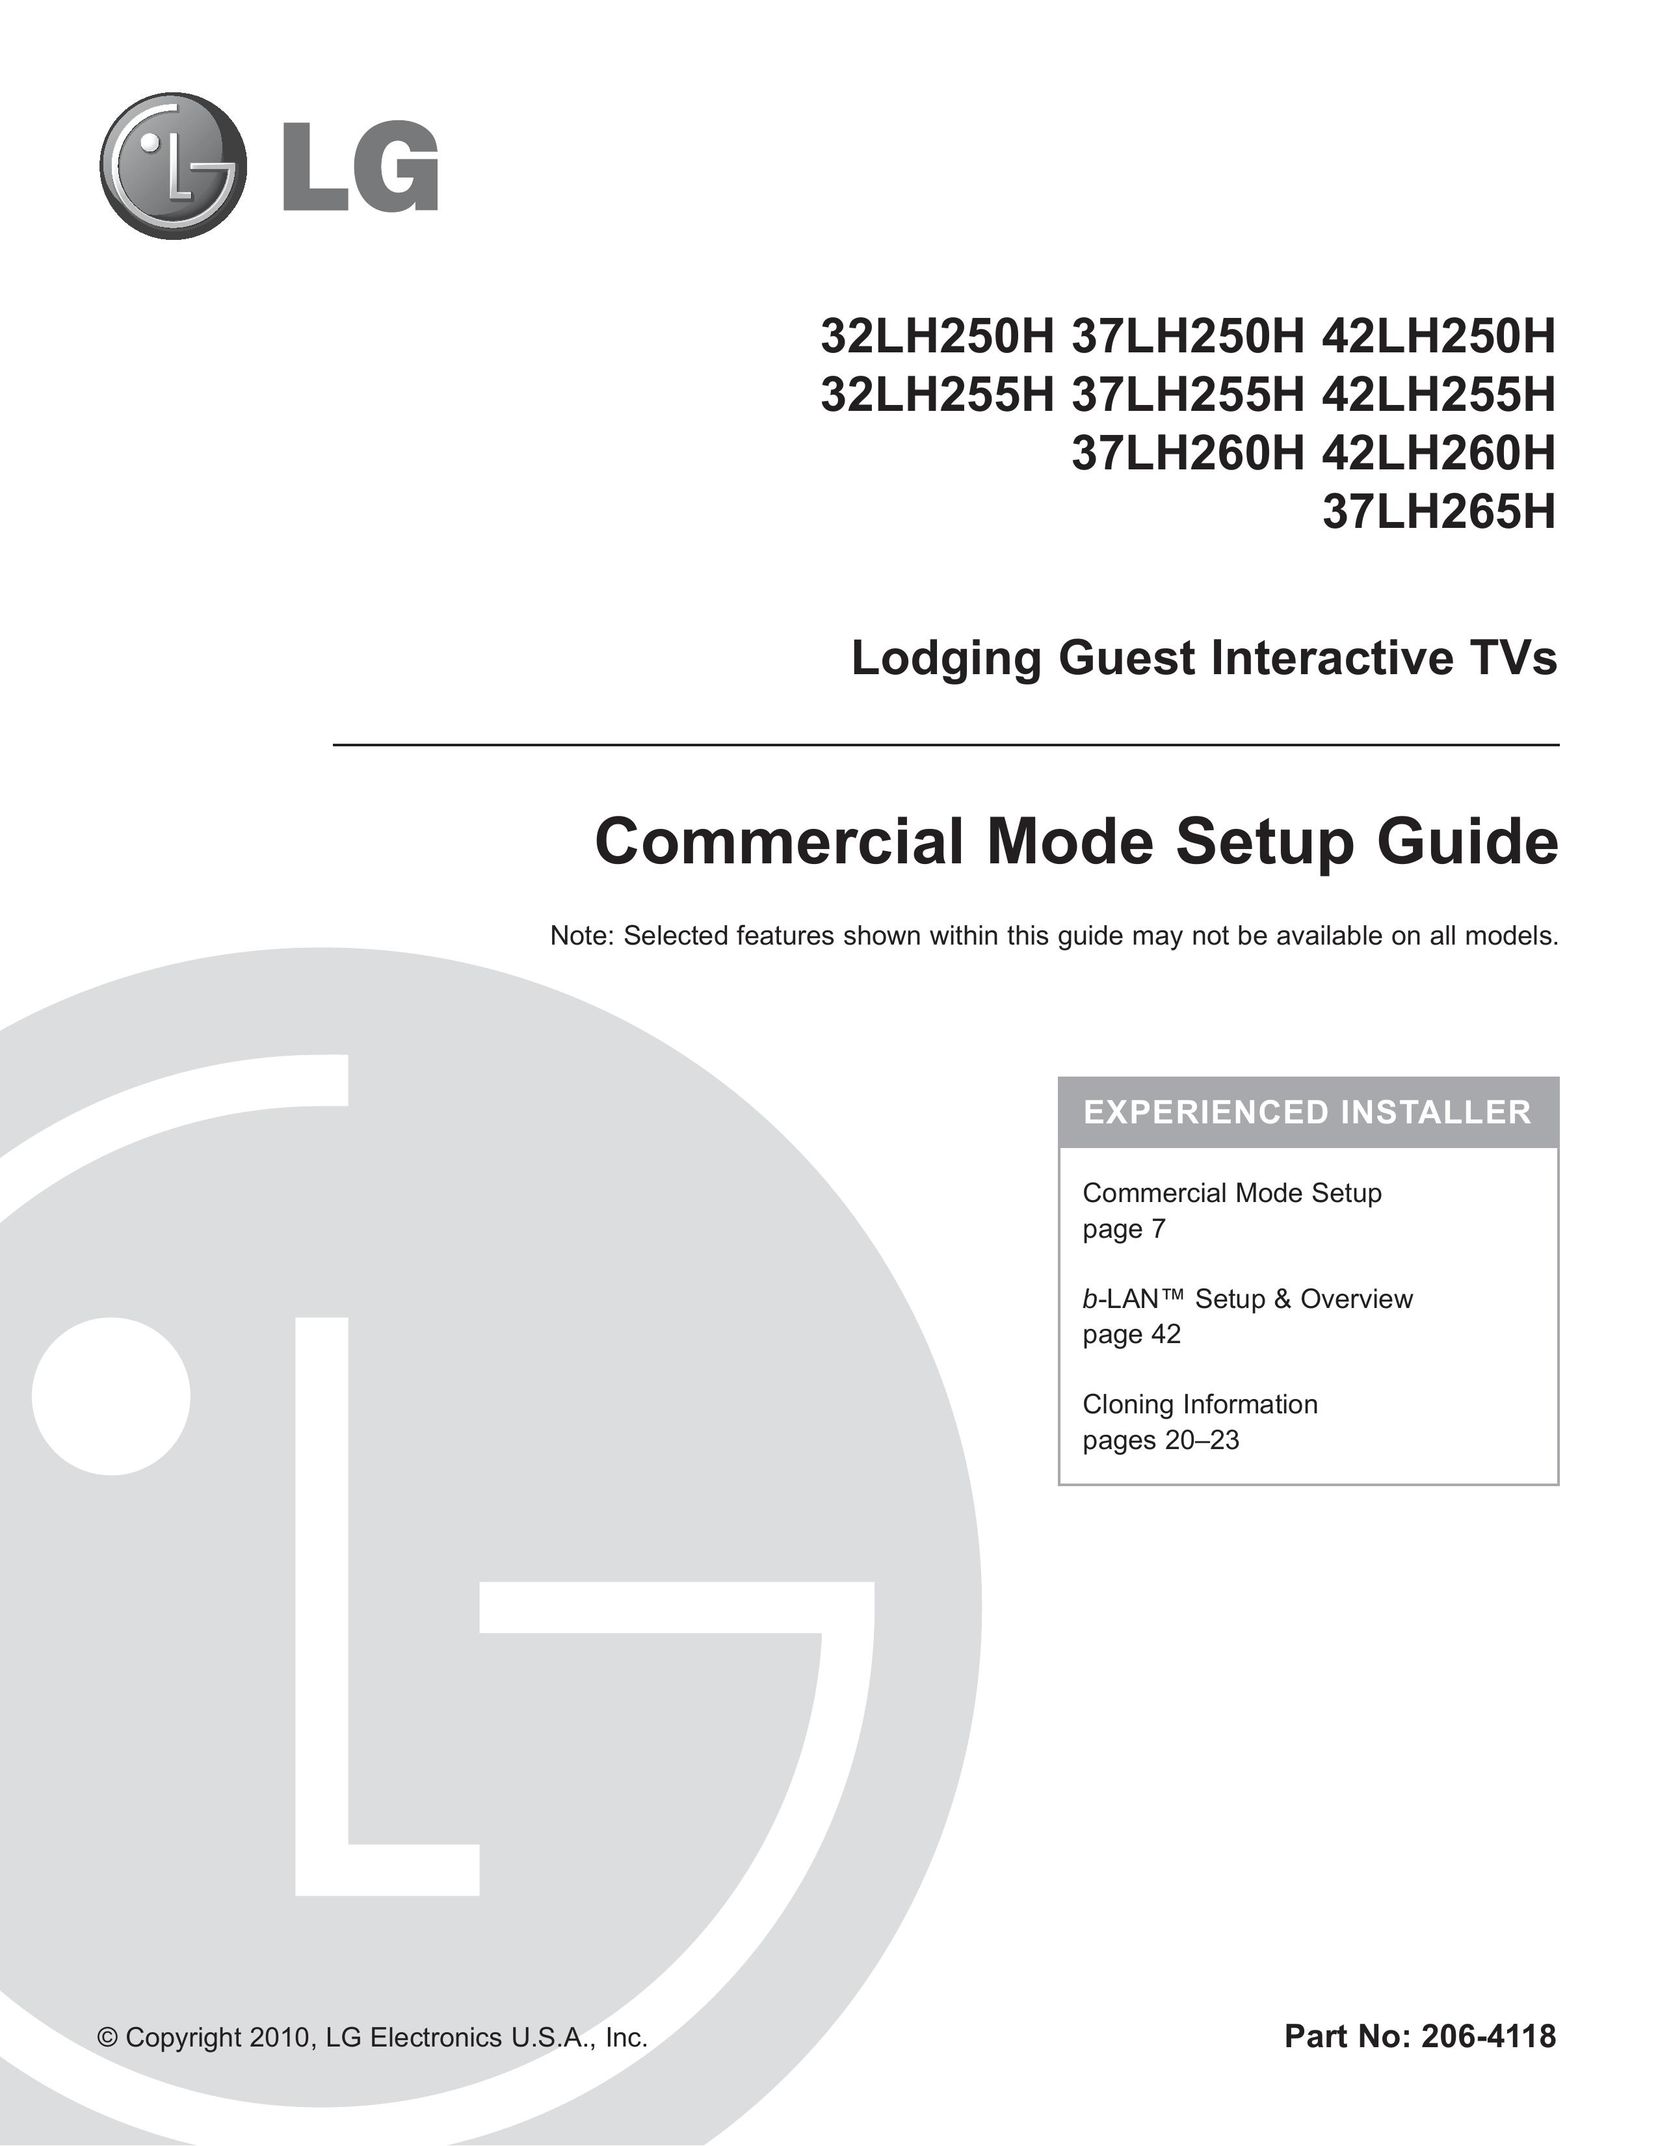 LG Electronics 32LH255H Car Satellite TV System User Manual